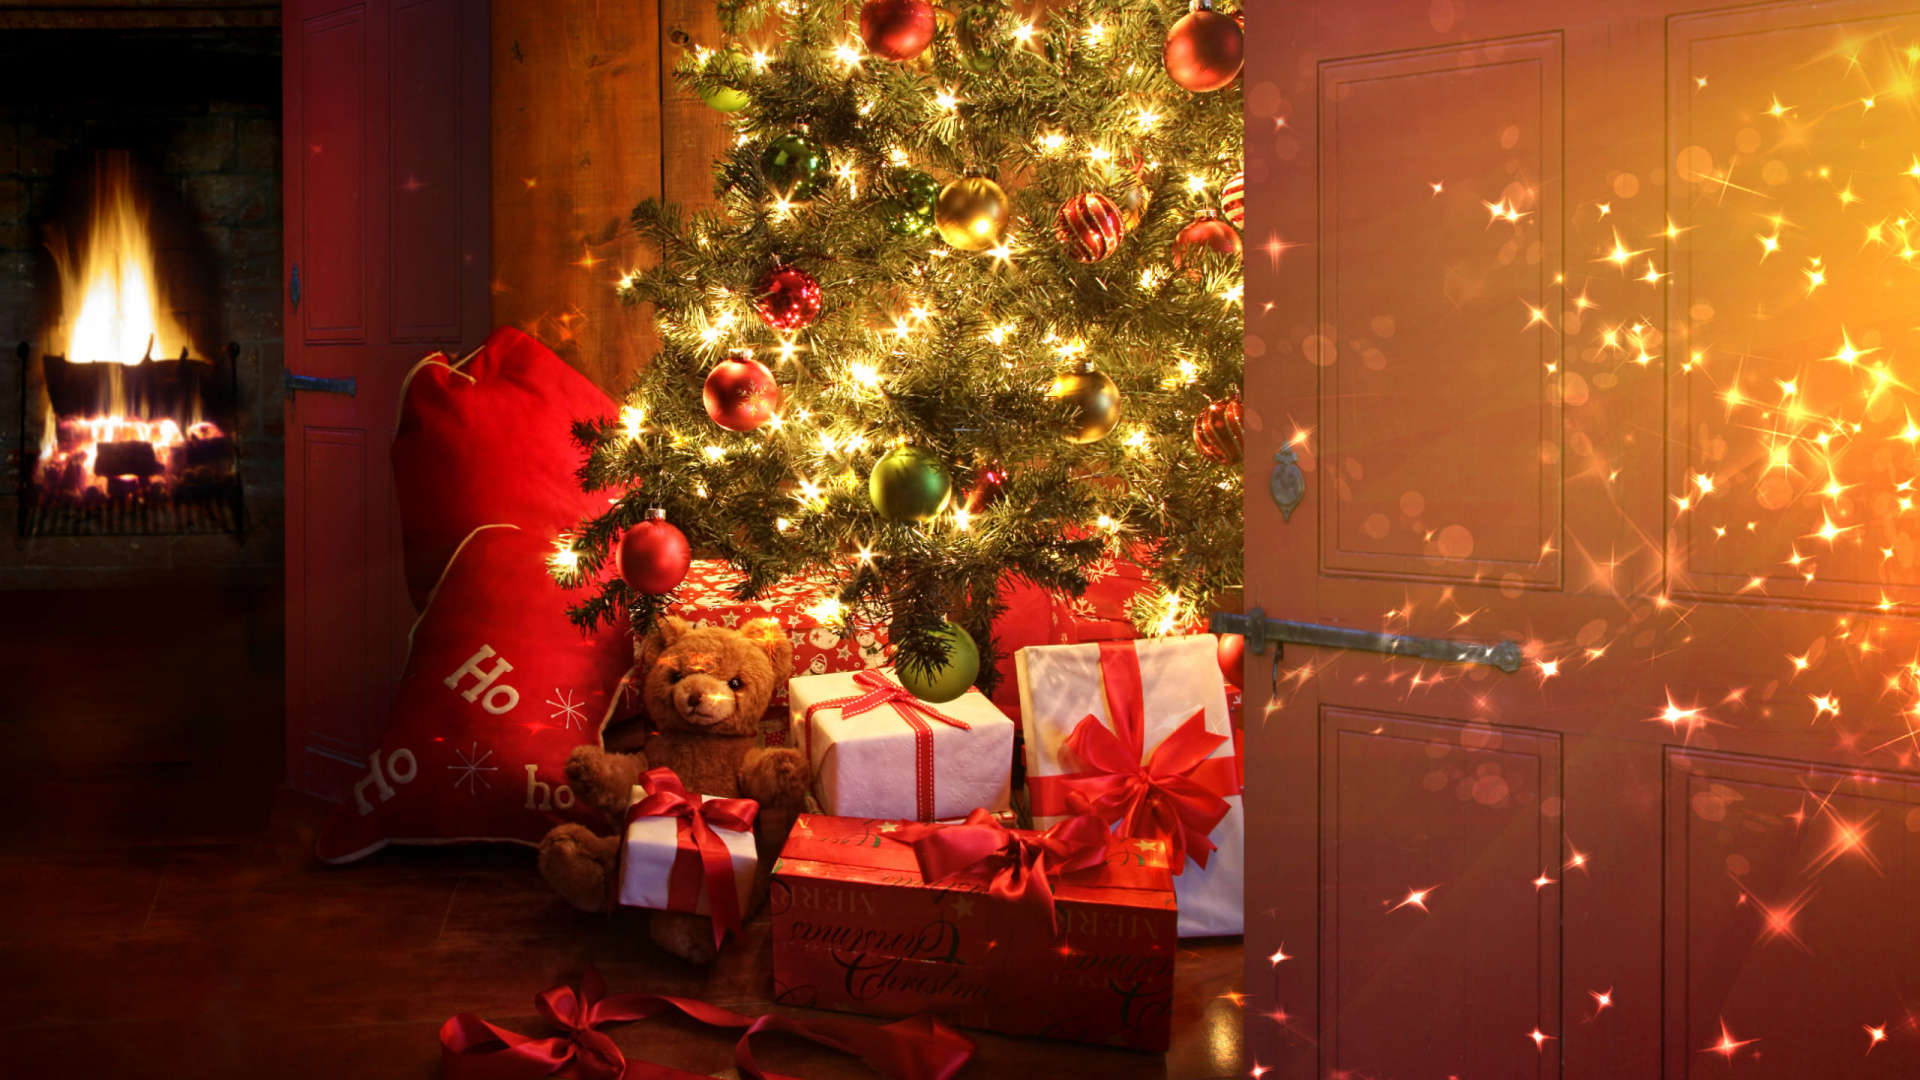 圣诞节那天, 圣诞树, 圣诞节, 圣诞装饰, 圣诞节的装饰品 壁纸 1920x1080 允许